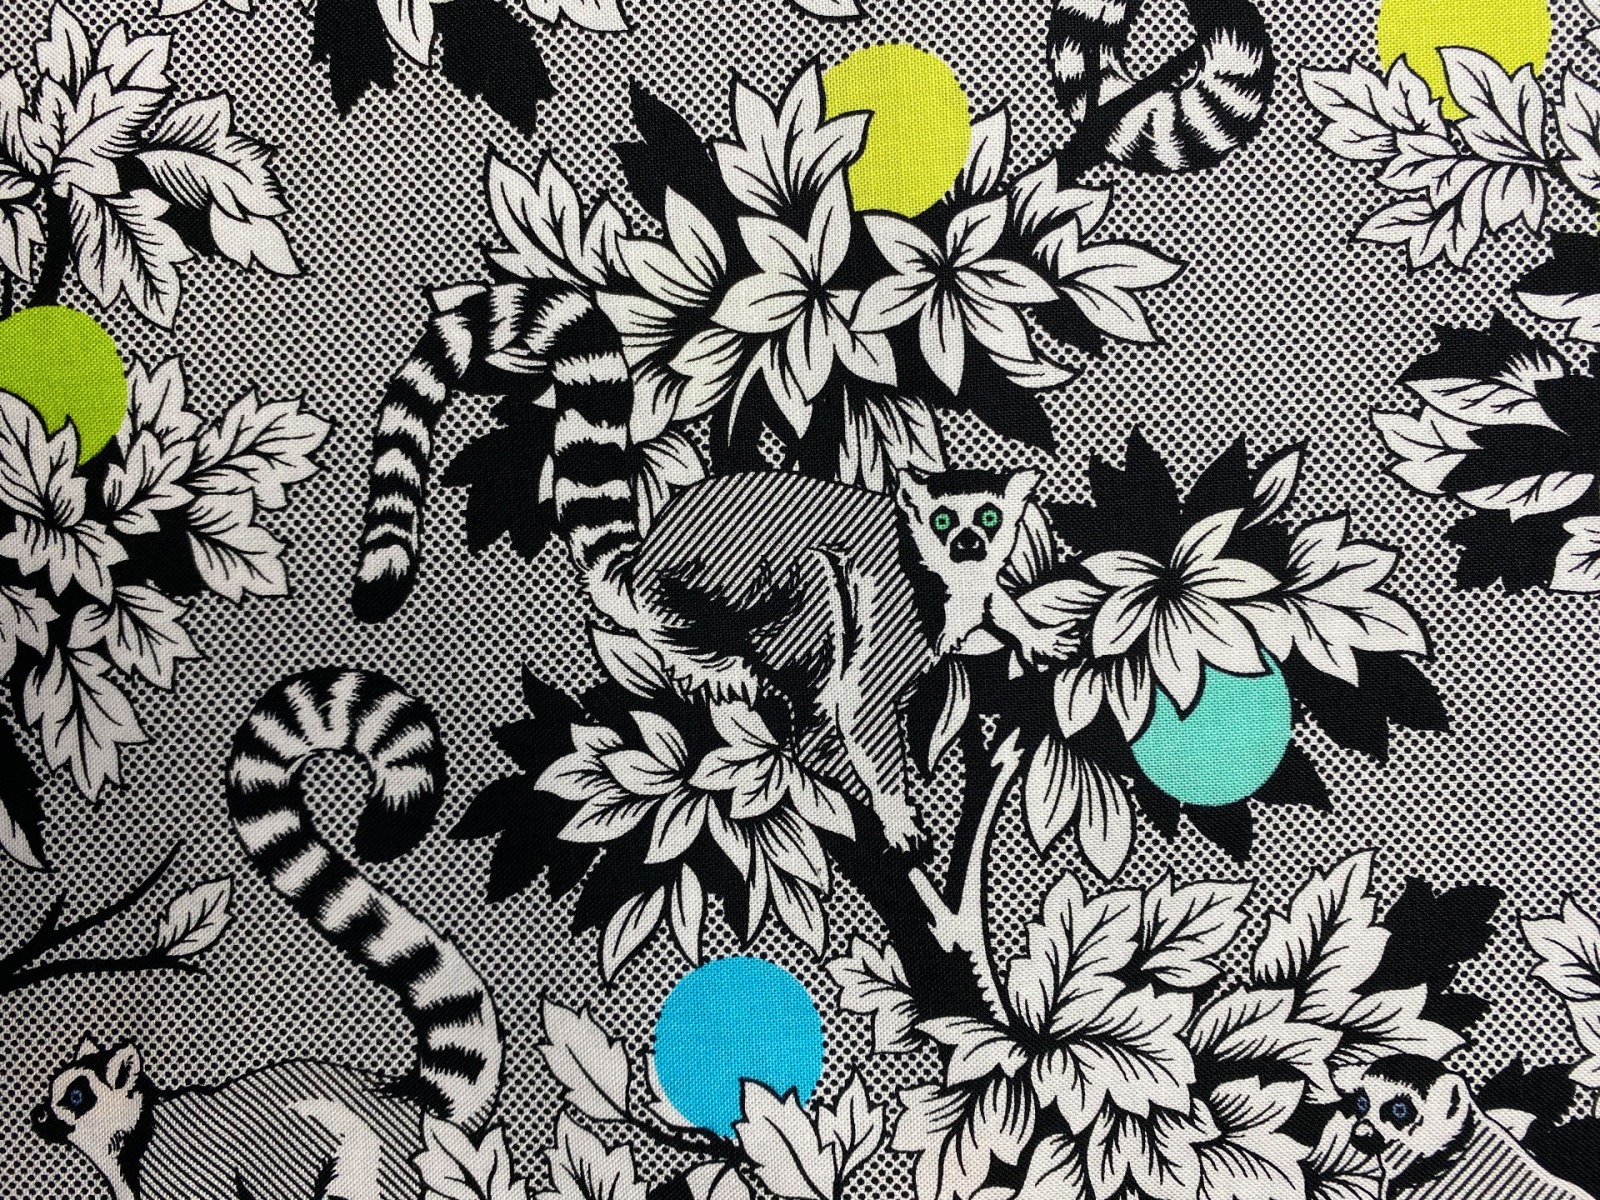 Stoff Lemur Me Alone - 100 Baumwolle - schwarz/weiß - Patchwork - Free Spirit Fabrics - Tula Pink - Kattas -Lemuren 4